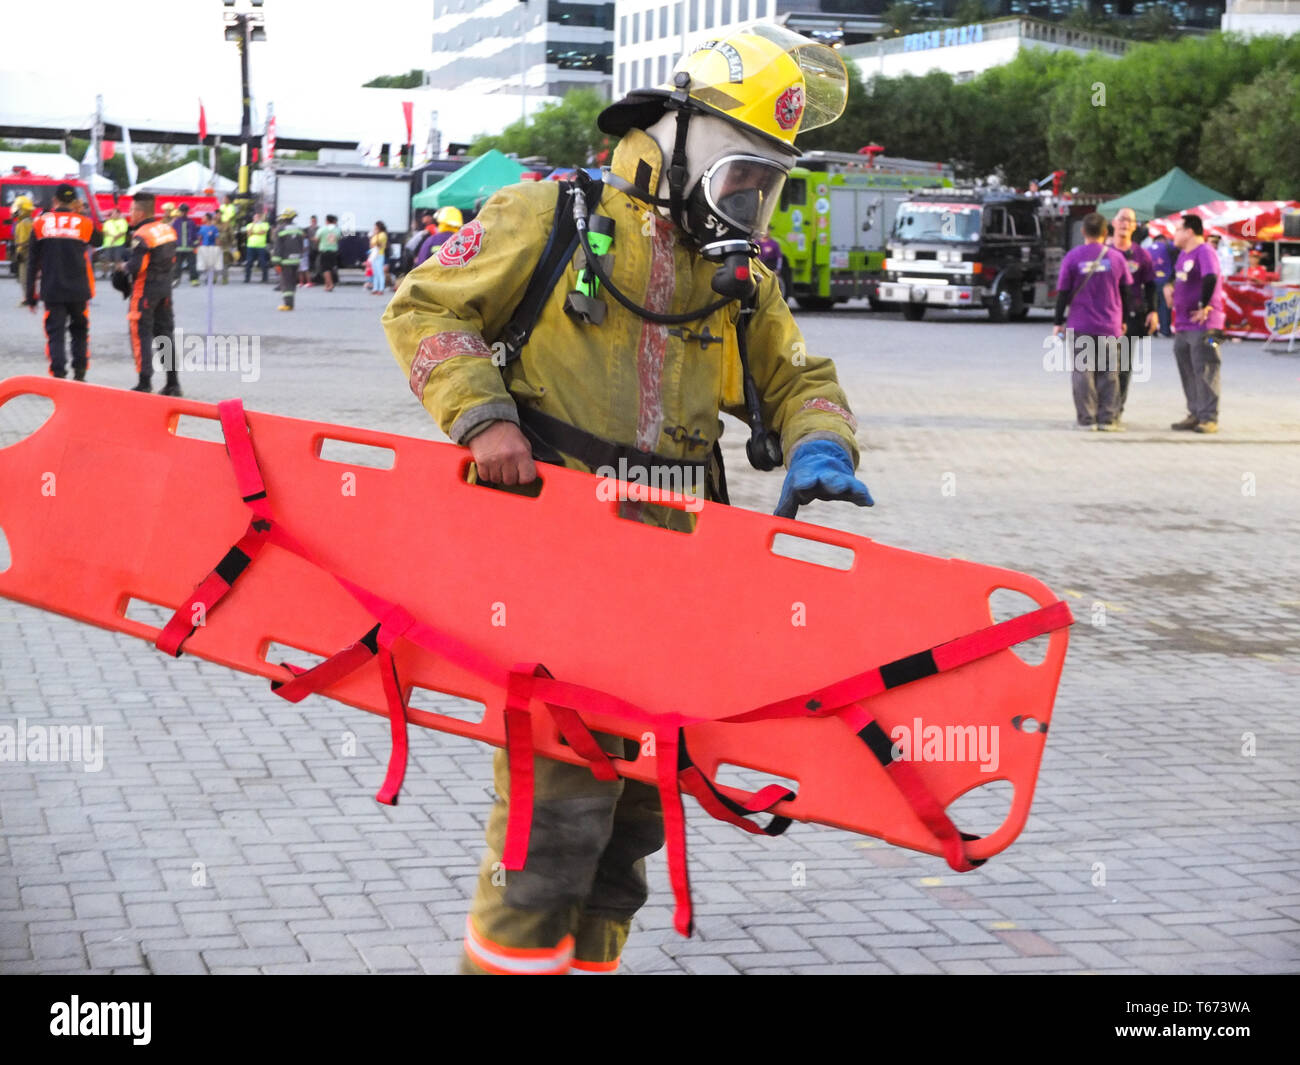 Ein Feuerwehrmann mit einer Sauerstoffmaske gesehen eine spine Board während des Wettbewerbs. Es ist ein jährlicher Wettbewerb der Feuerwehrleute ihre Brandbekämpfung Fähigkeit und ihre Kenntnisse in Rettung ein Brand Opfer durch die verschiedenen Situationen zu zeigen, von der Rettung zu kämpfen. Stockfoto